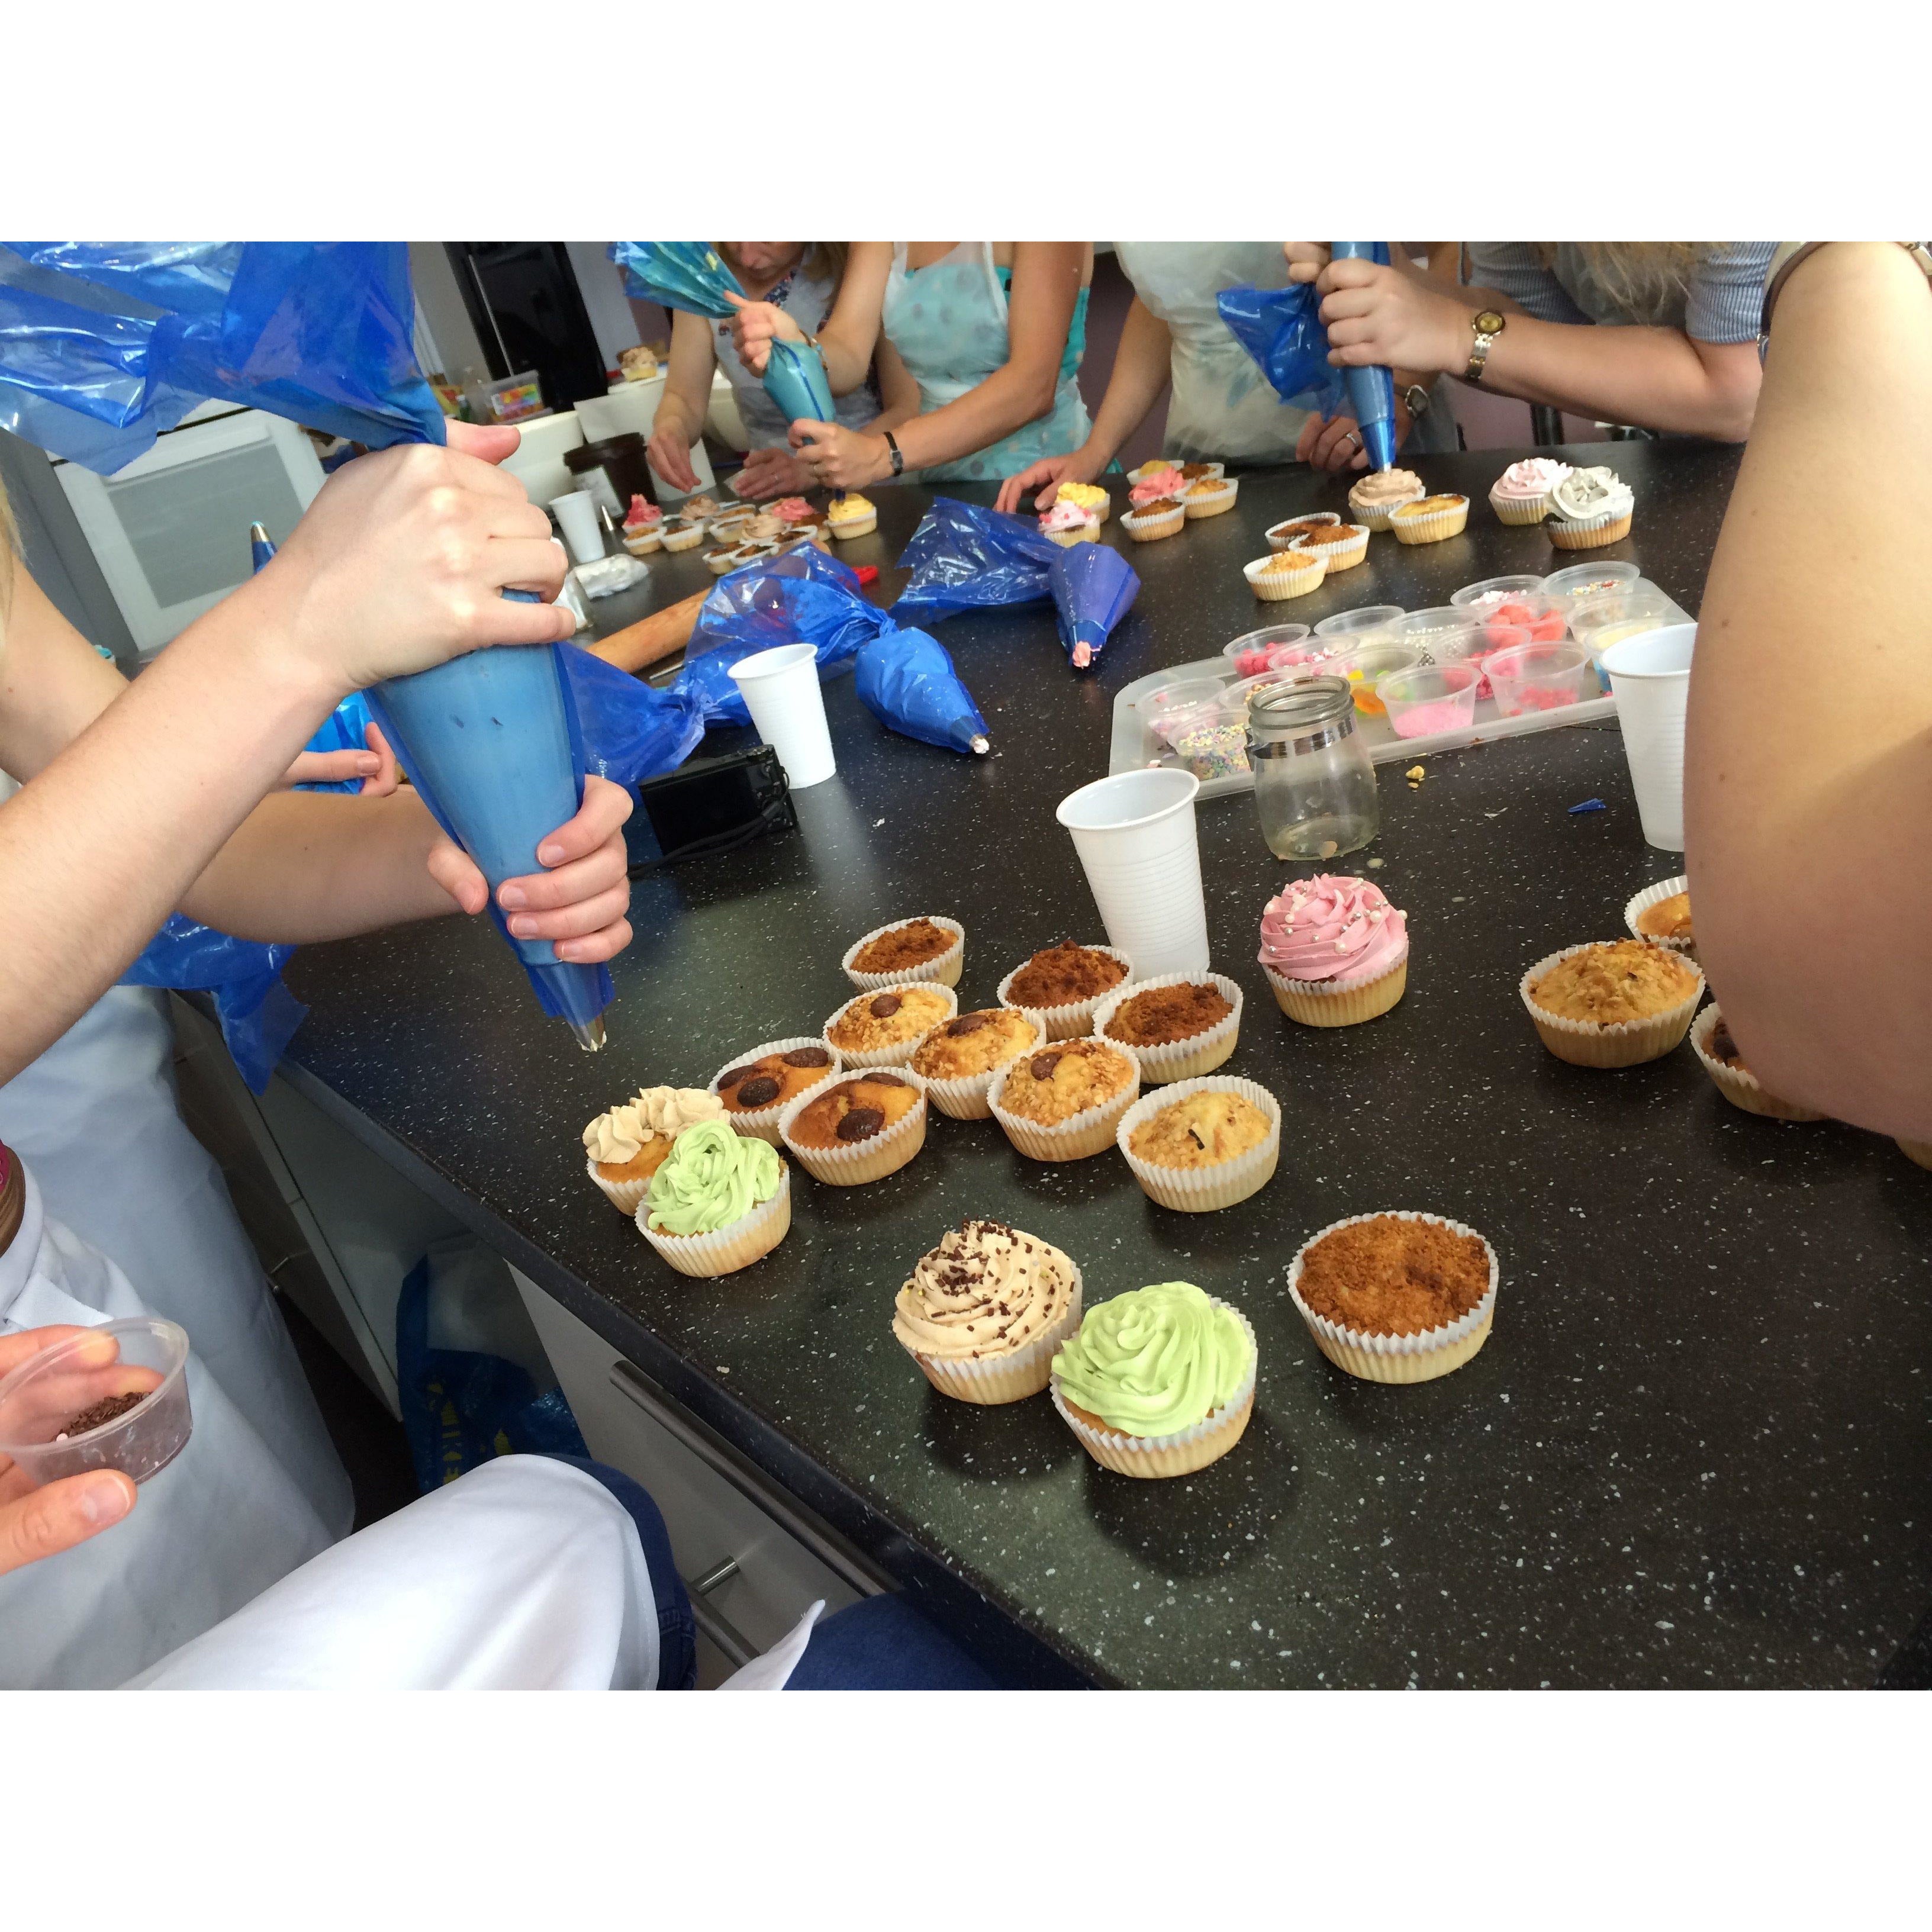 Bon Cadeau 12-16 ans 40€ (Macarons, pâte à choux, cupcakes) - L'Atelier des Gâteaux